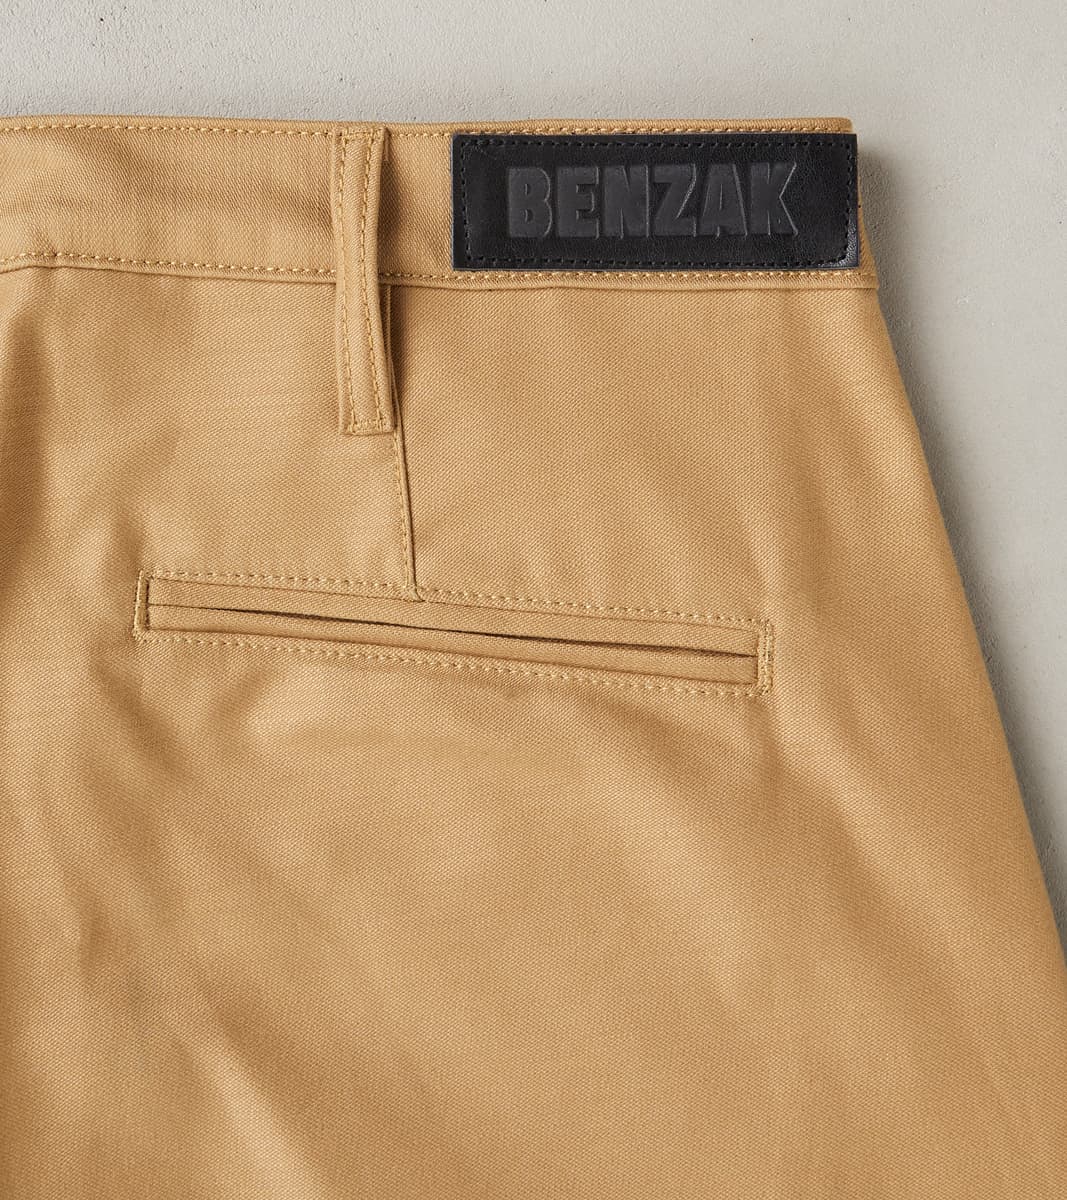 Momotaro Back Satin Brown Cargo Pants (Slim Tapered) 36 / Brown